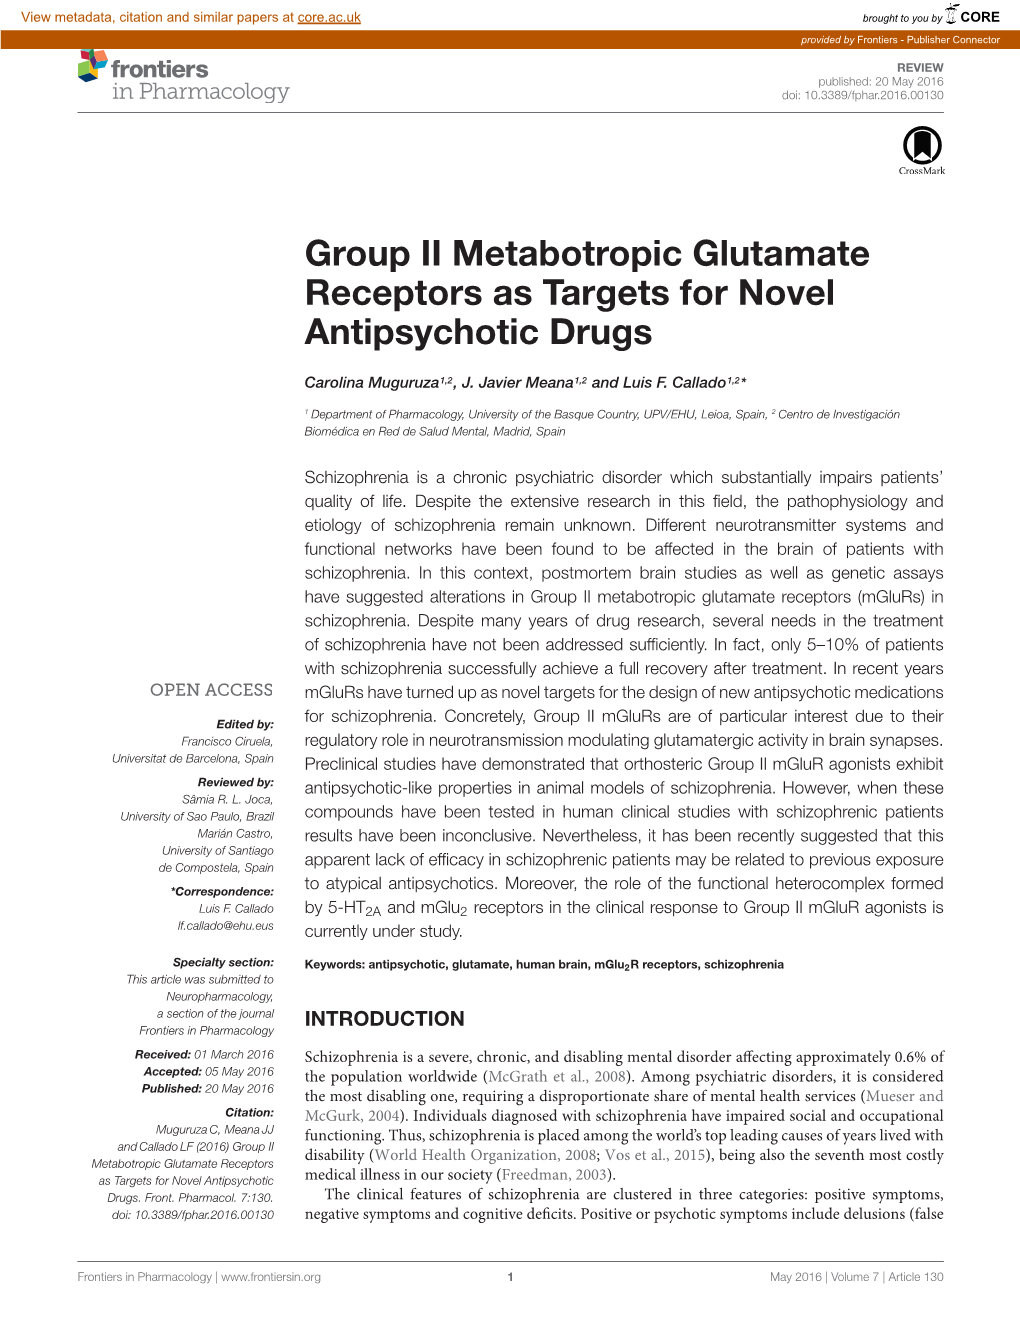 Group II Metabotropic Glutamate Receptors As Targets for Novel Antipsychotic Drugs